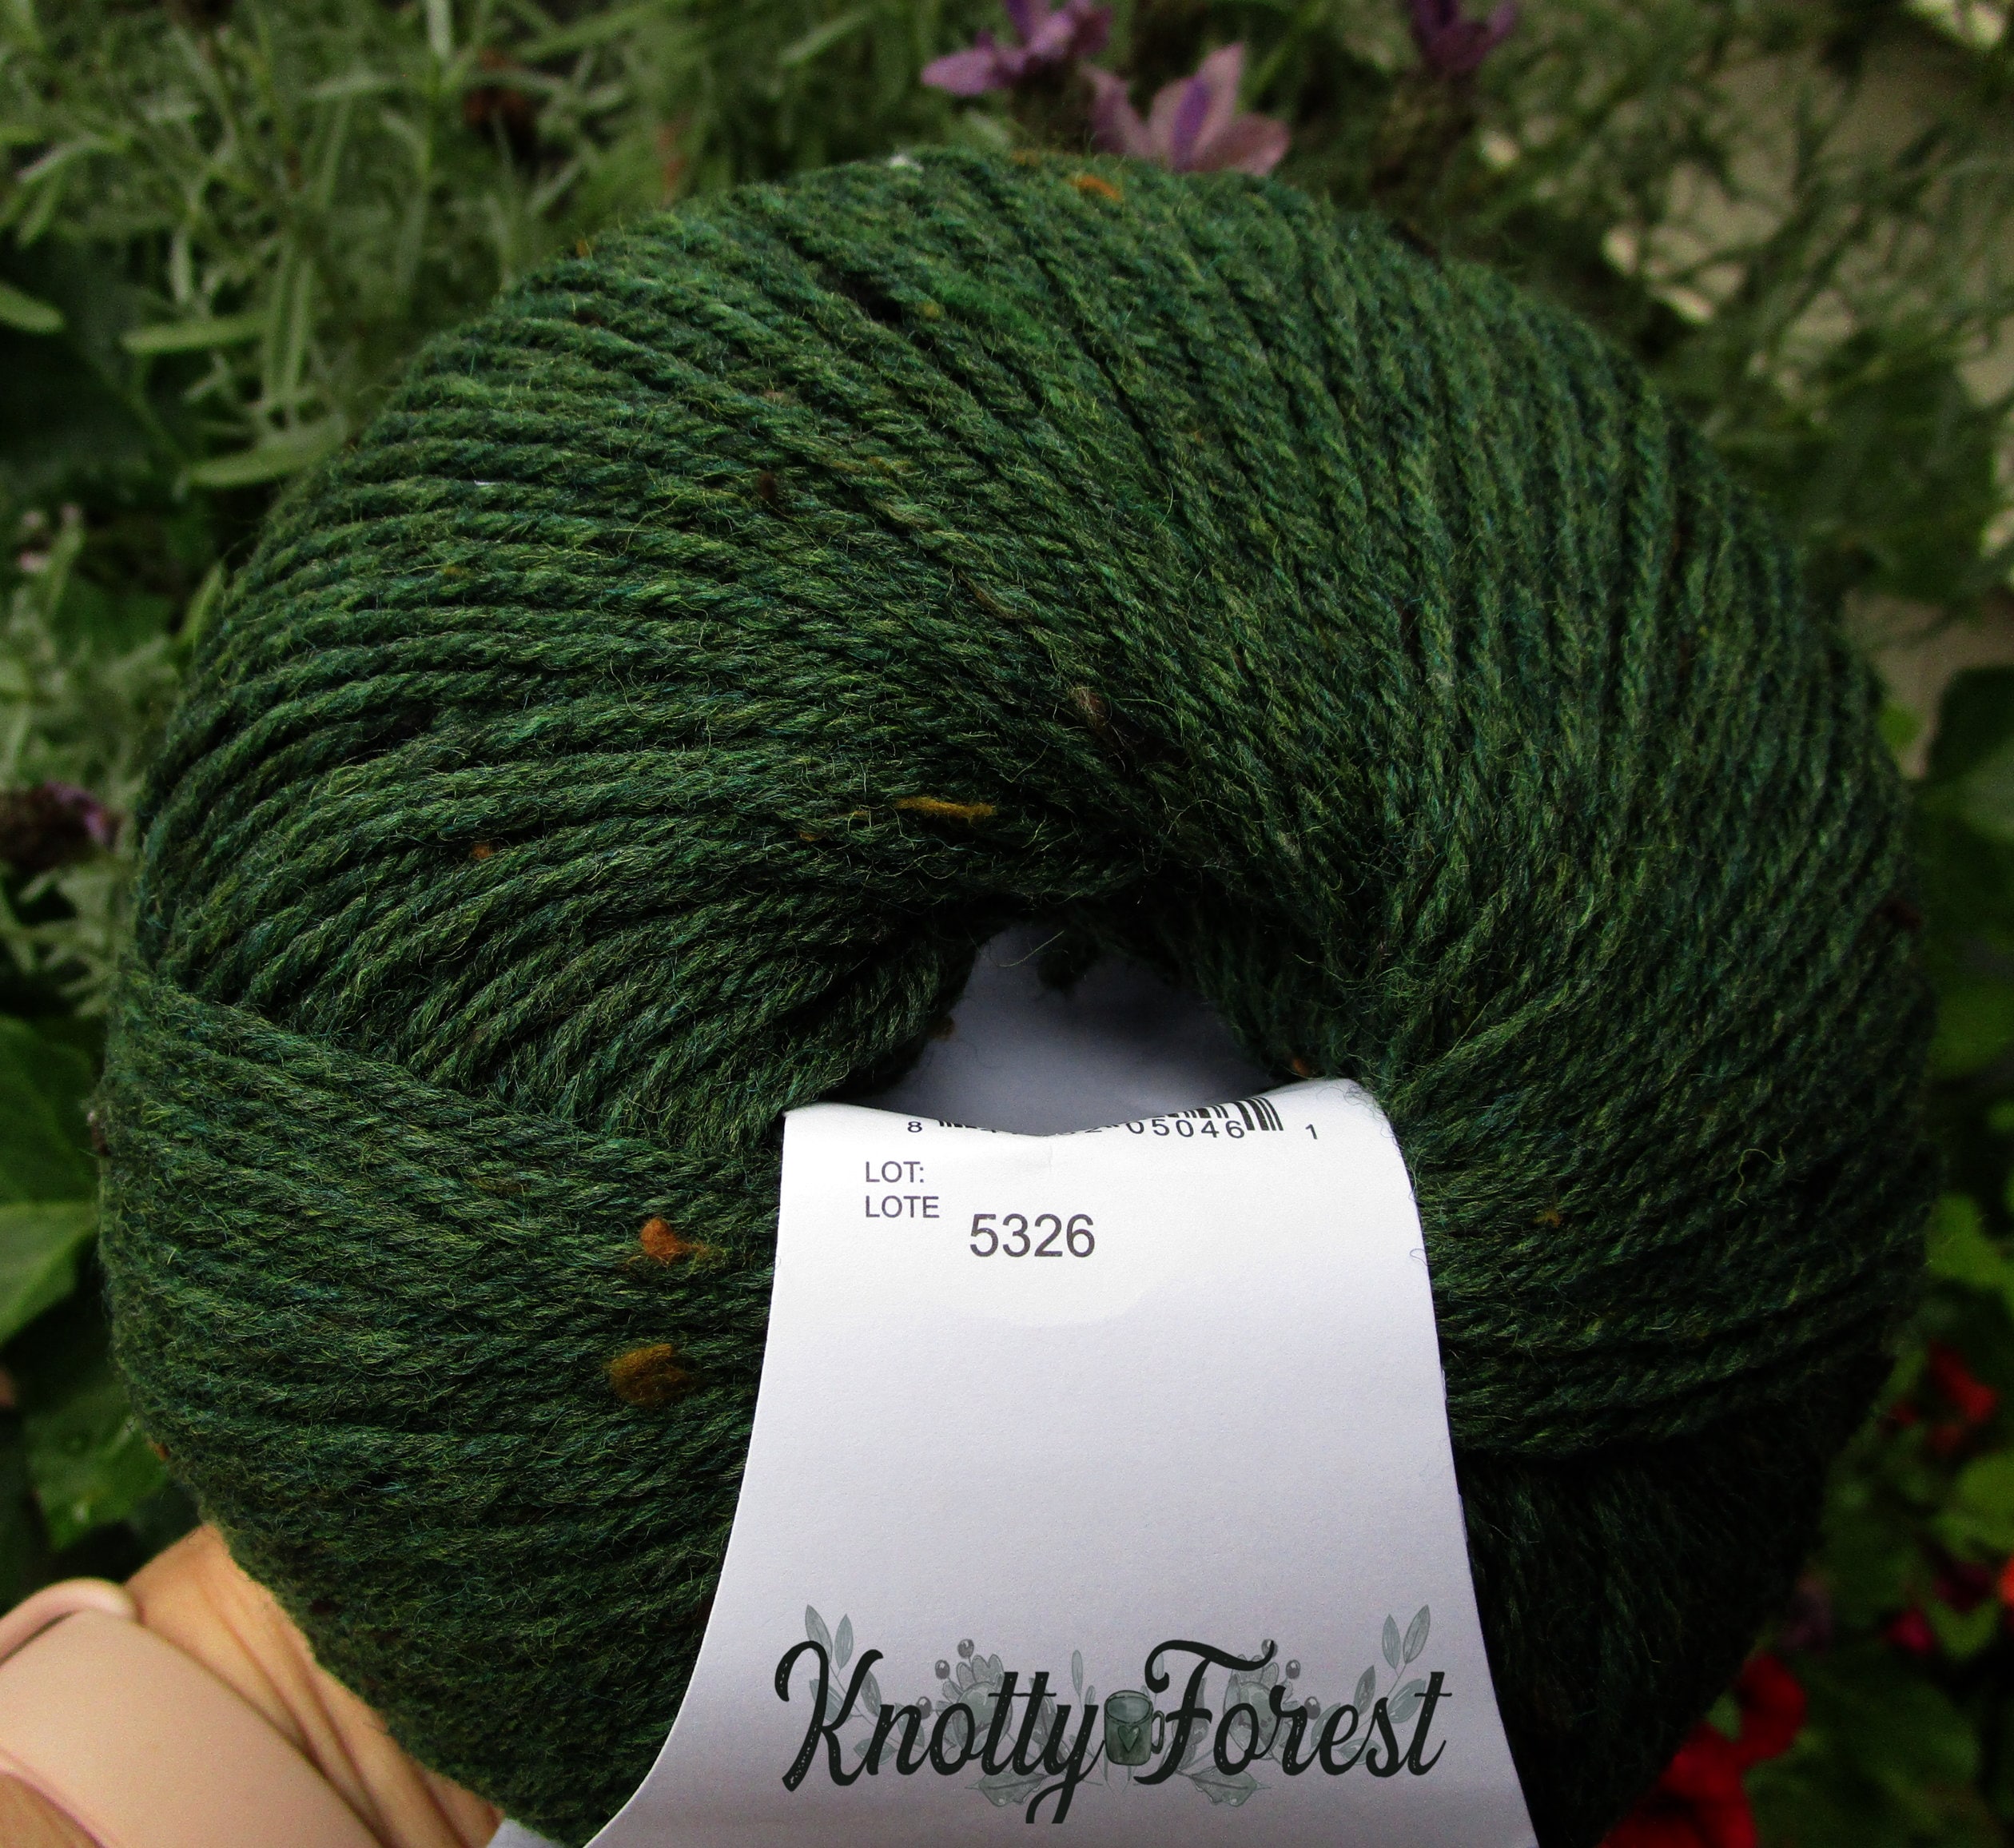 Yarnart Creative - Knitting Yarn Olive Green - 235